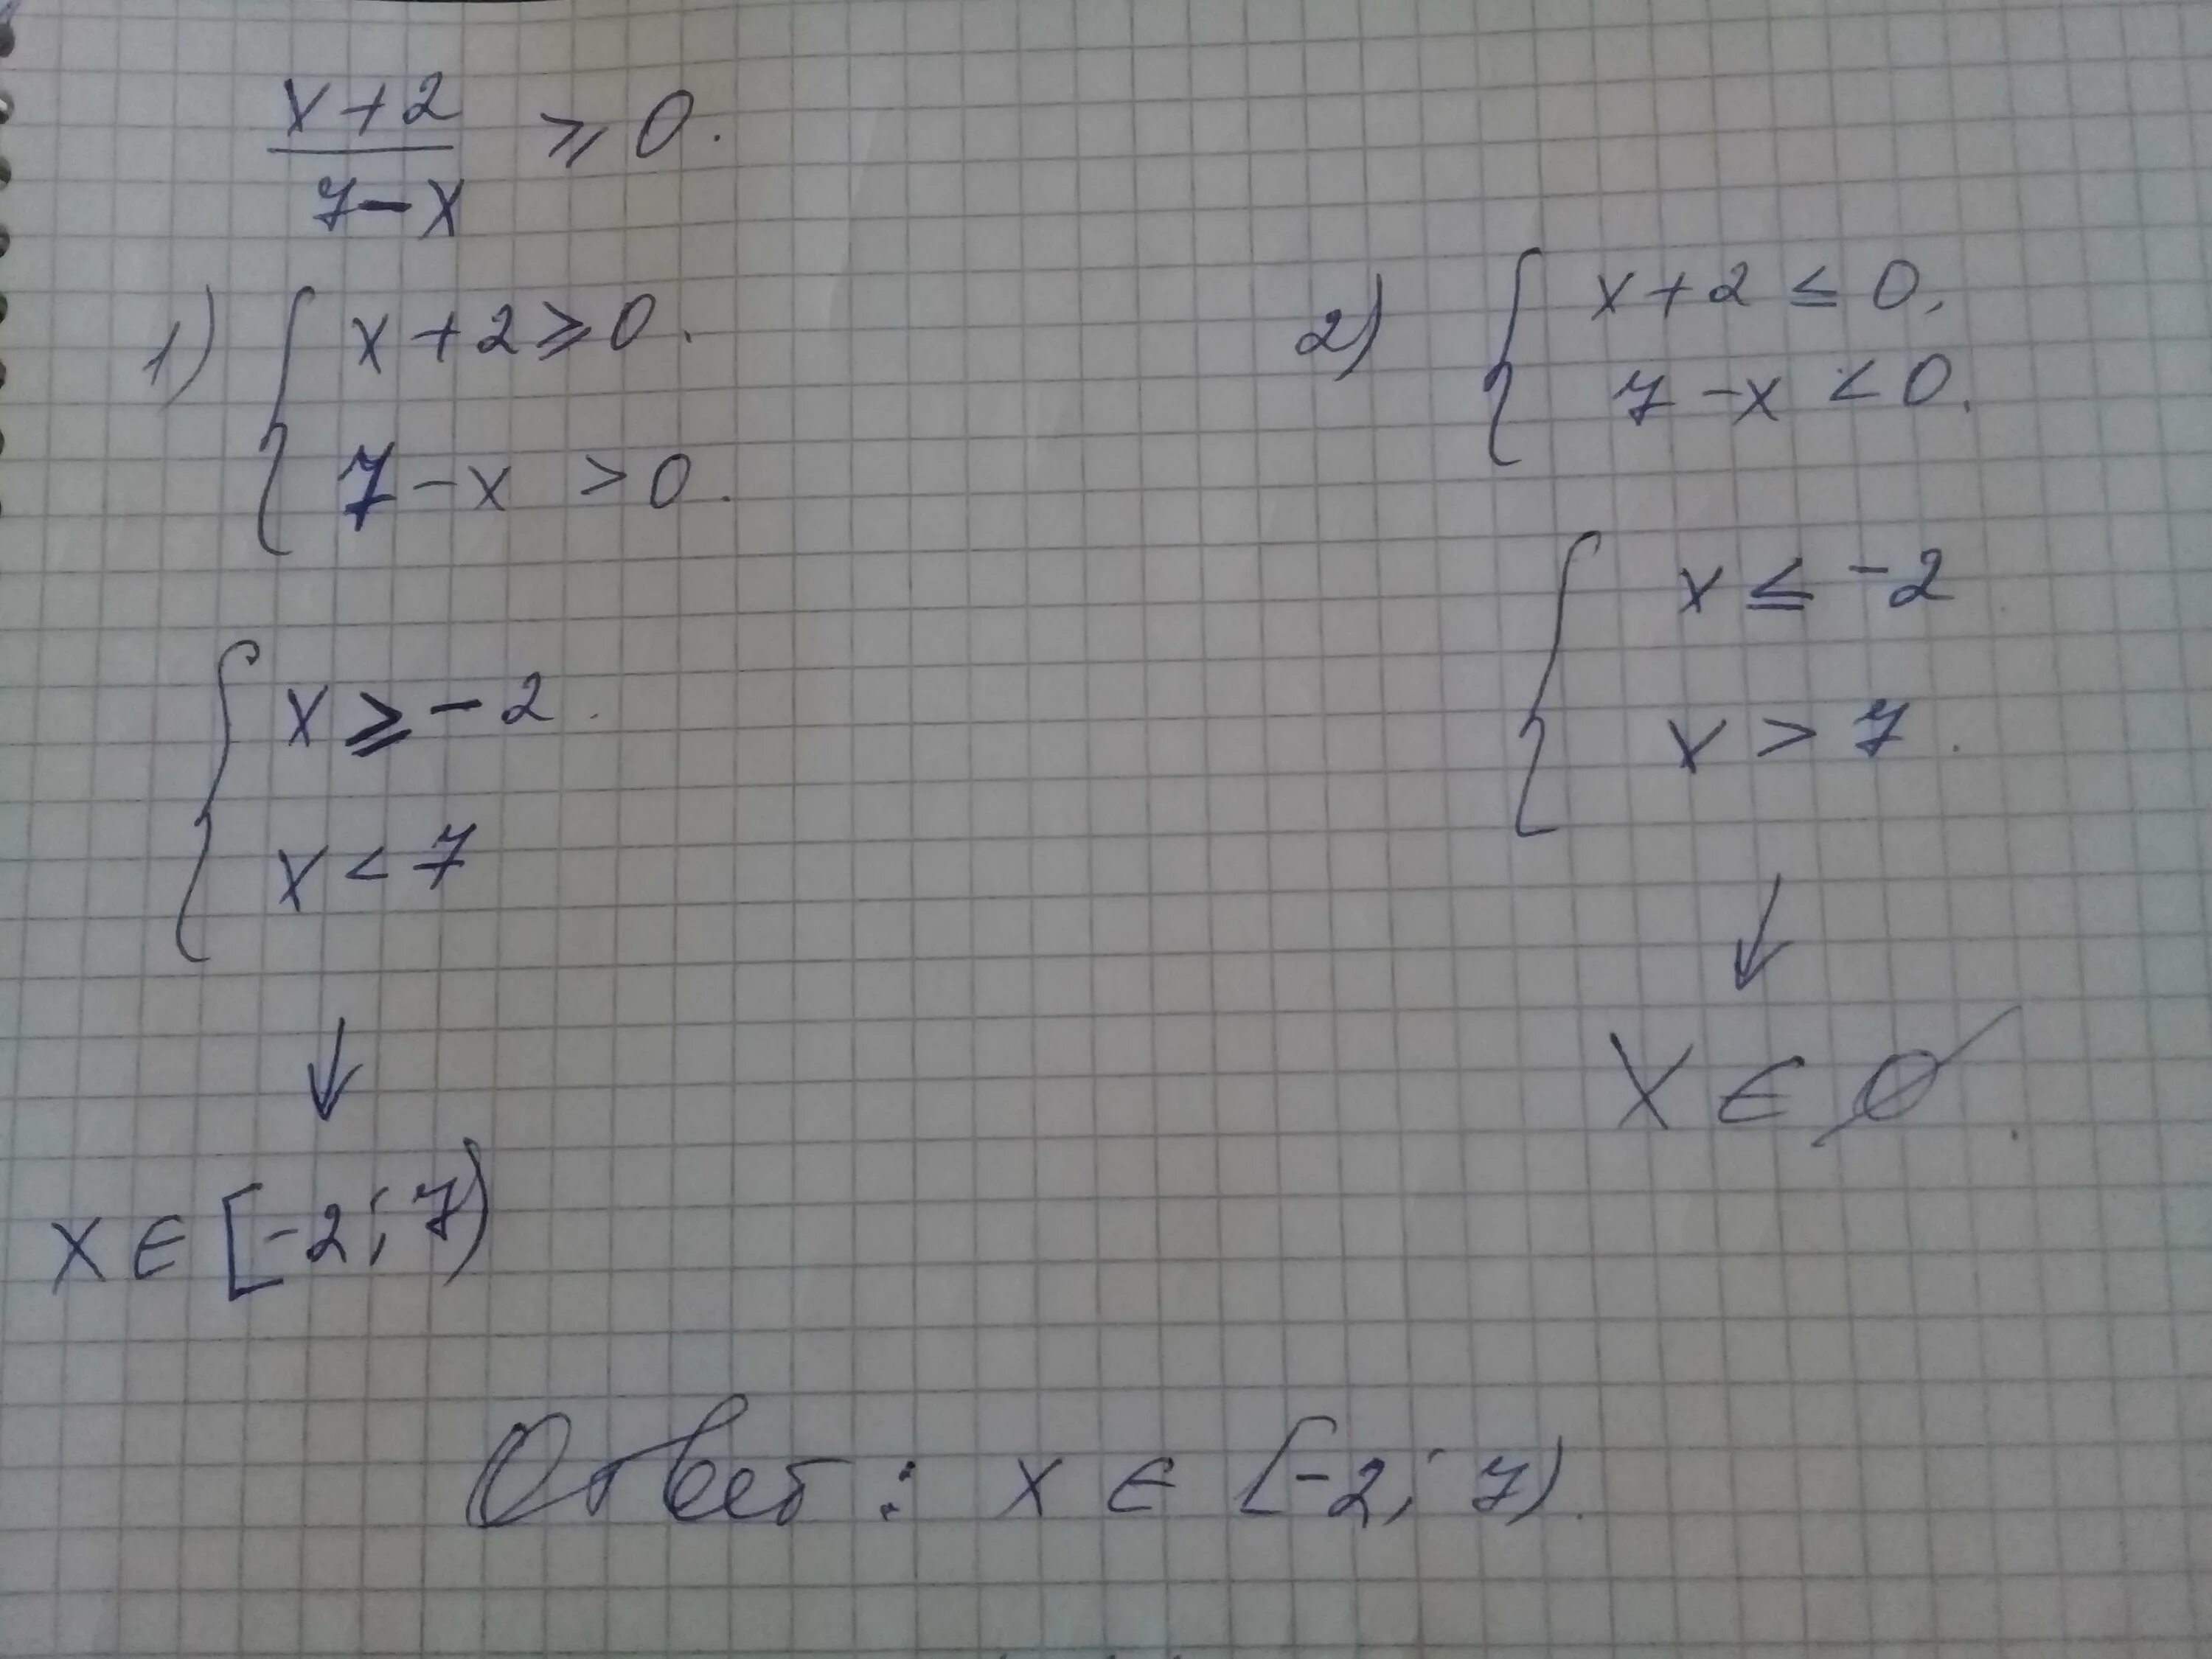 3x 6 больше 0. X 2 7x 10 больше или равно нулю. 7x-x2 больше или равно 0. X больше или равно 0. 7x-x2 больше 0.